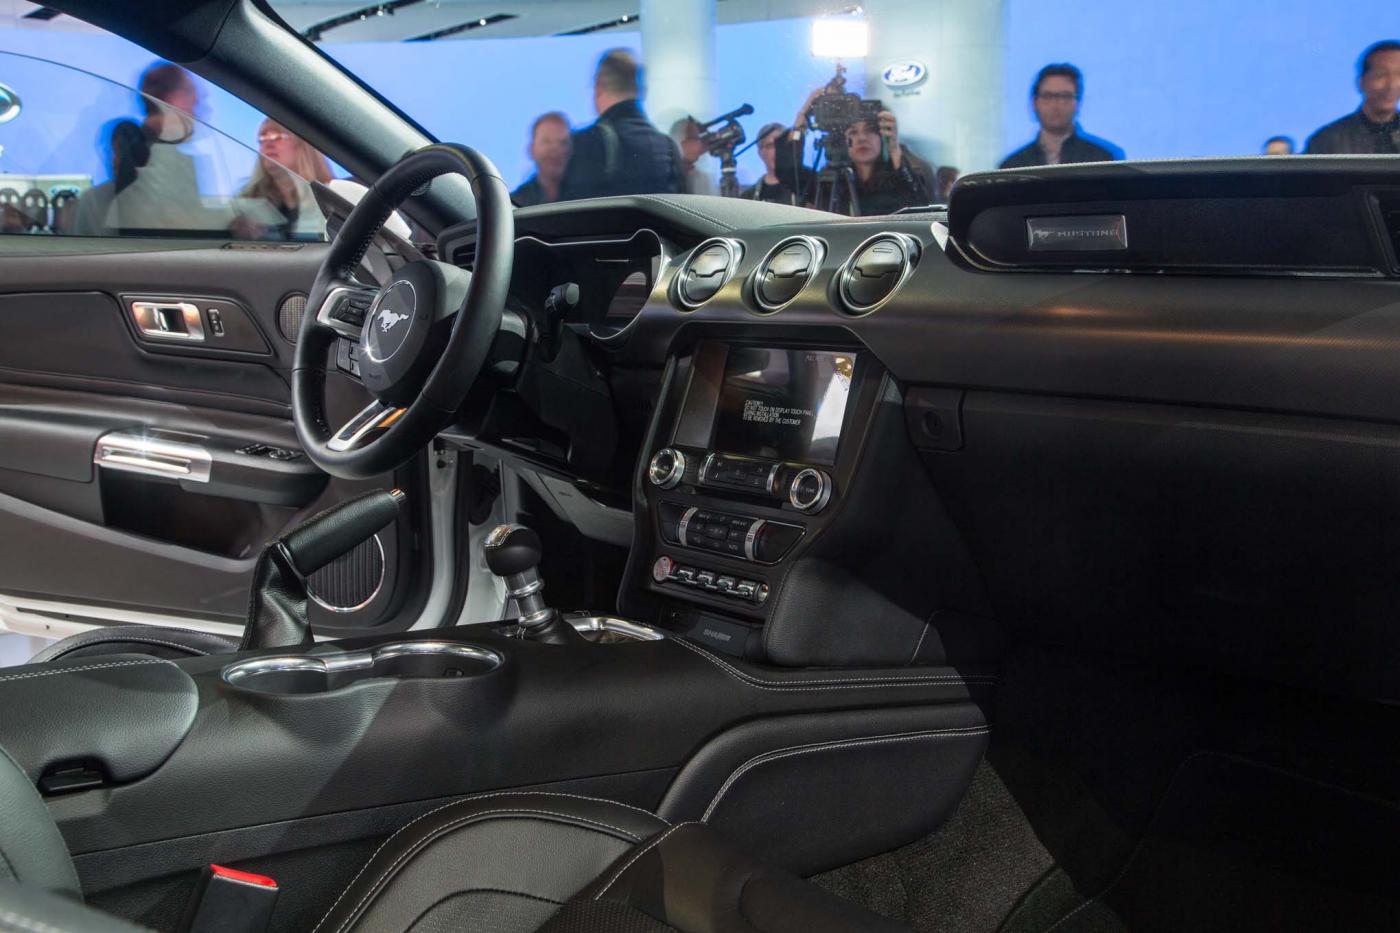 2018-Mustang-Interior-2.jpg